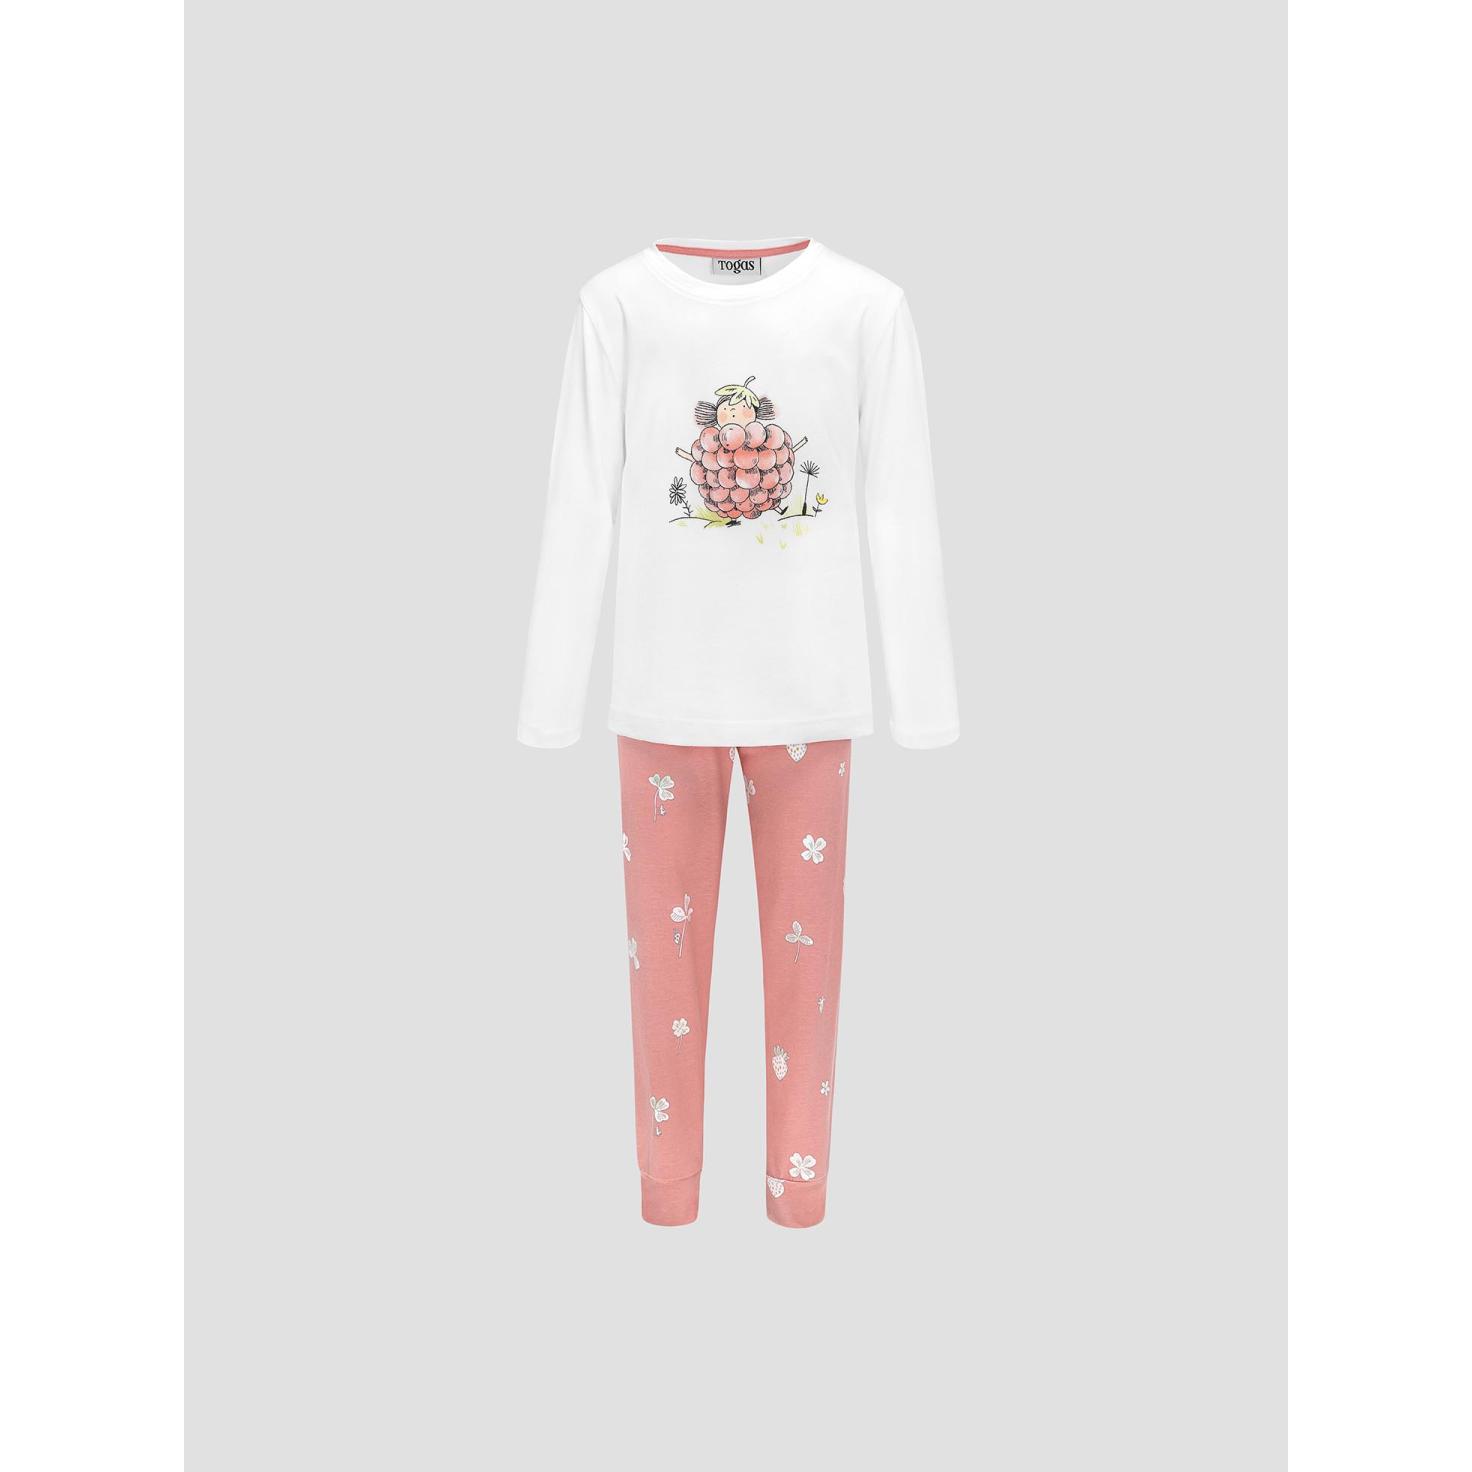 Пижама для девочек Kids by togas Стробби бело-розовый 140-146 см жен пижама с шортами инь янь белый р 52